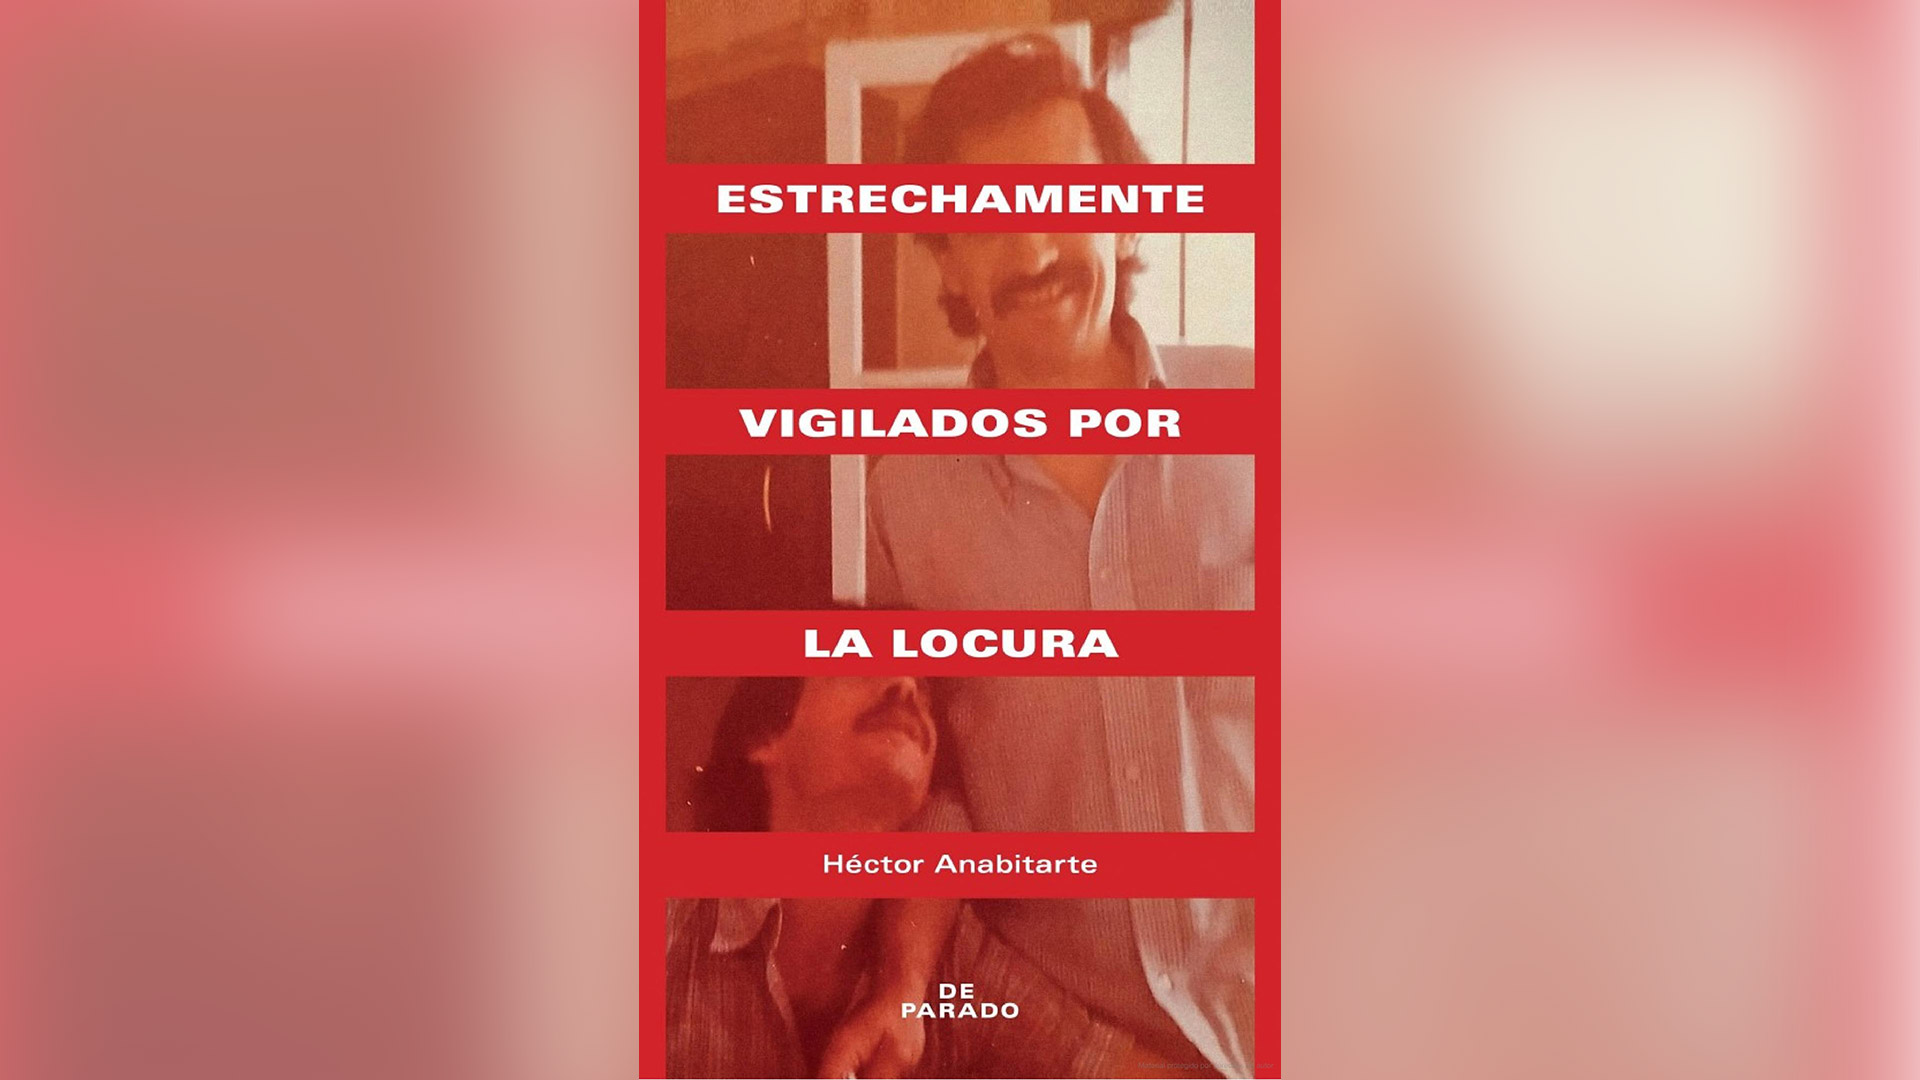 Portada de la primera edición argentina de Estrechamente vigilados por la locura, de Héctor Anabitarte, editada por De Parado